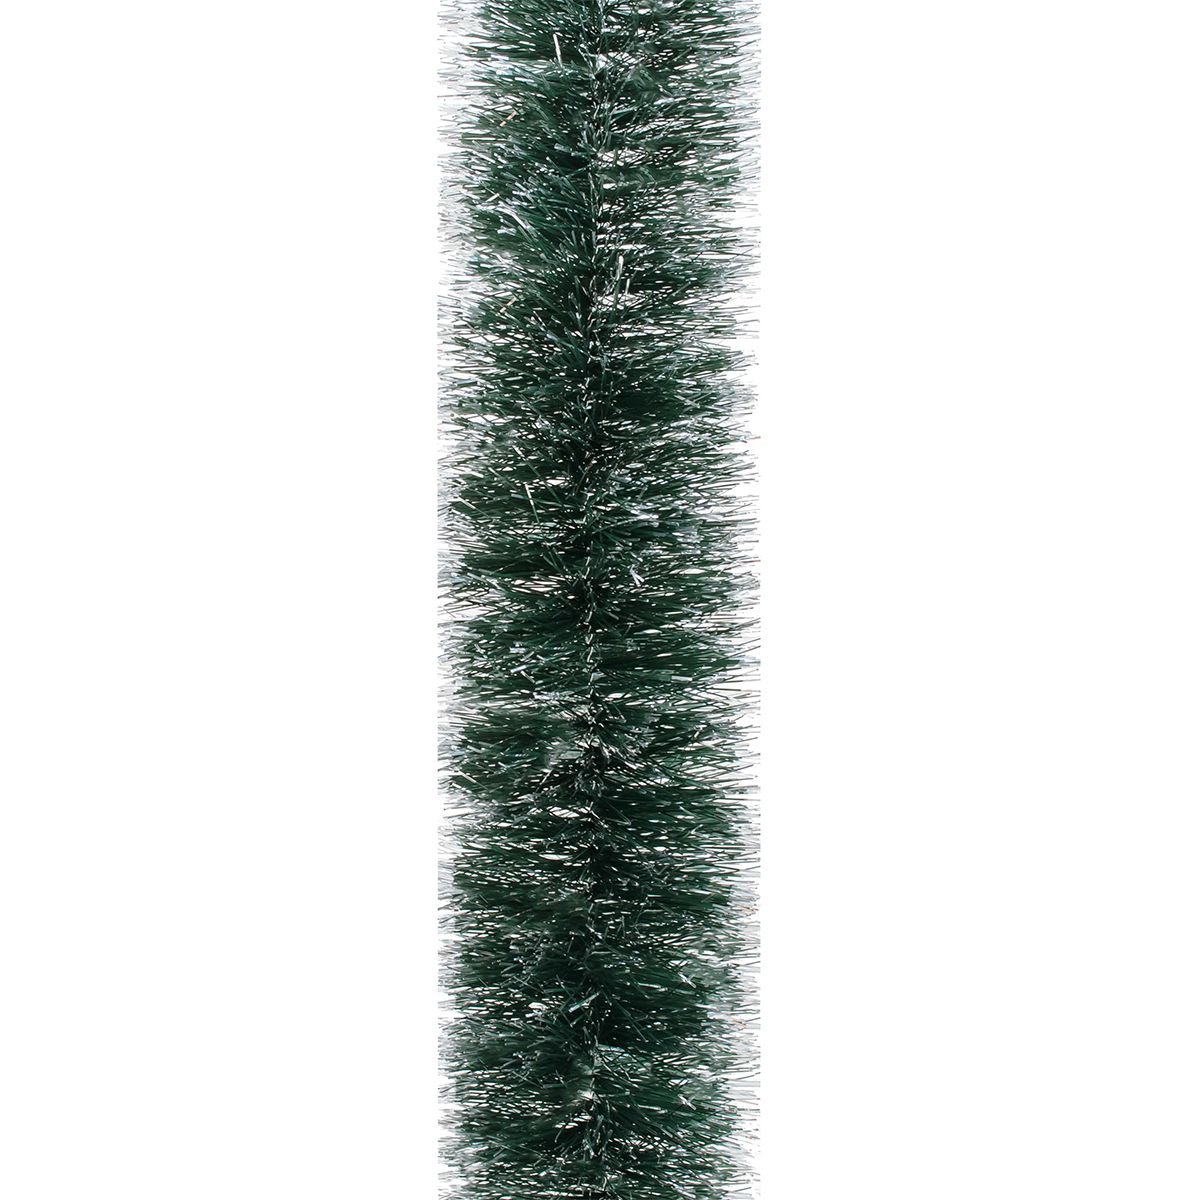 Мішура Novogod'ko 7.5 см 2 м зелена зі срібними кінчиками (980439) - фото 1